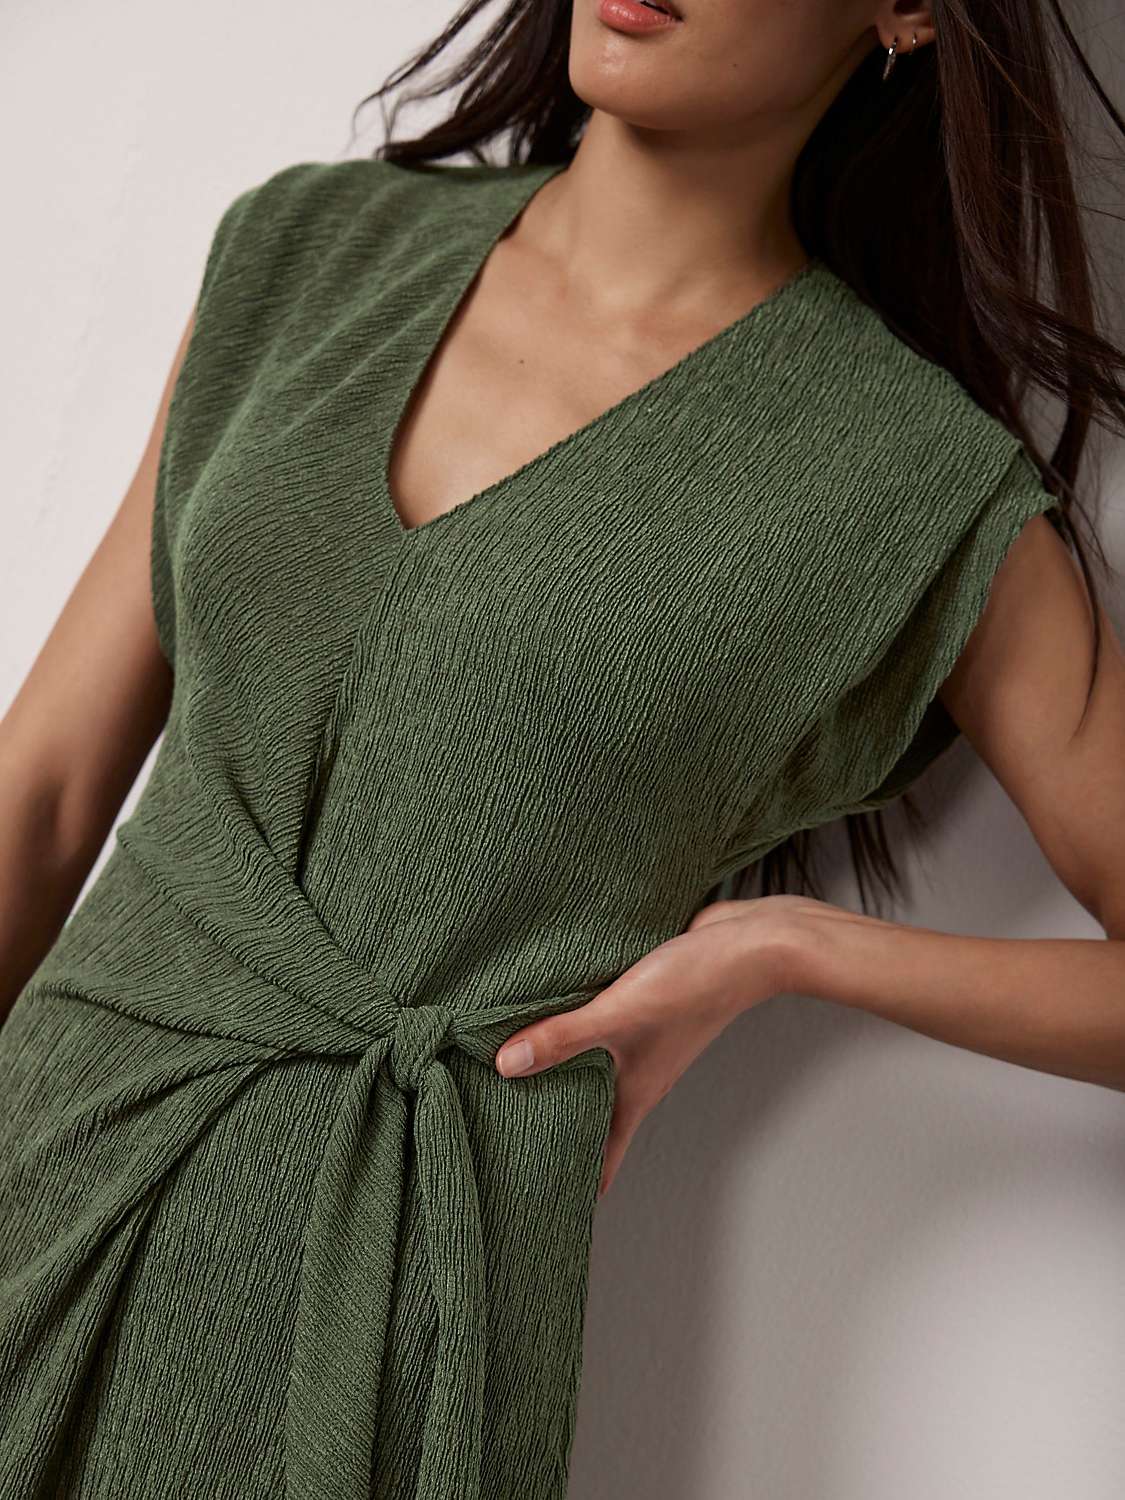 Buy Mint Velvet Textured Midi Dress, Khaki Online at johnlewis.com